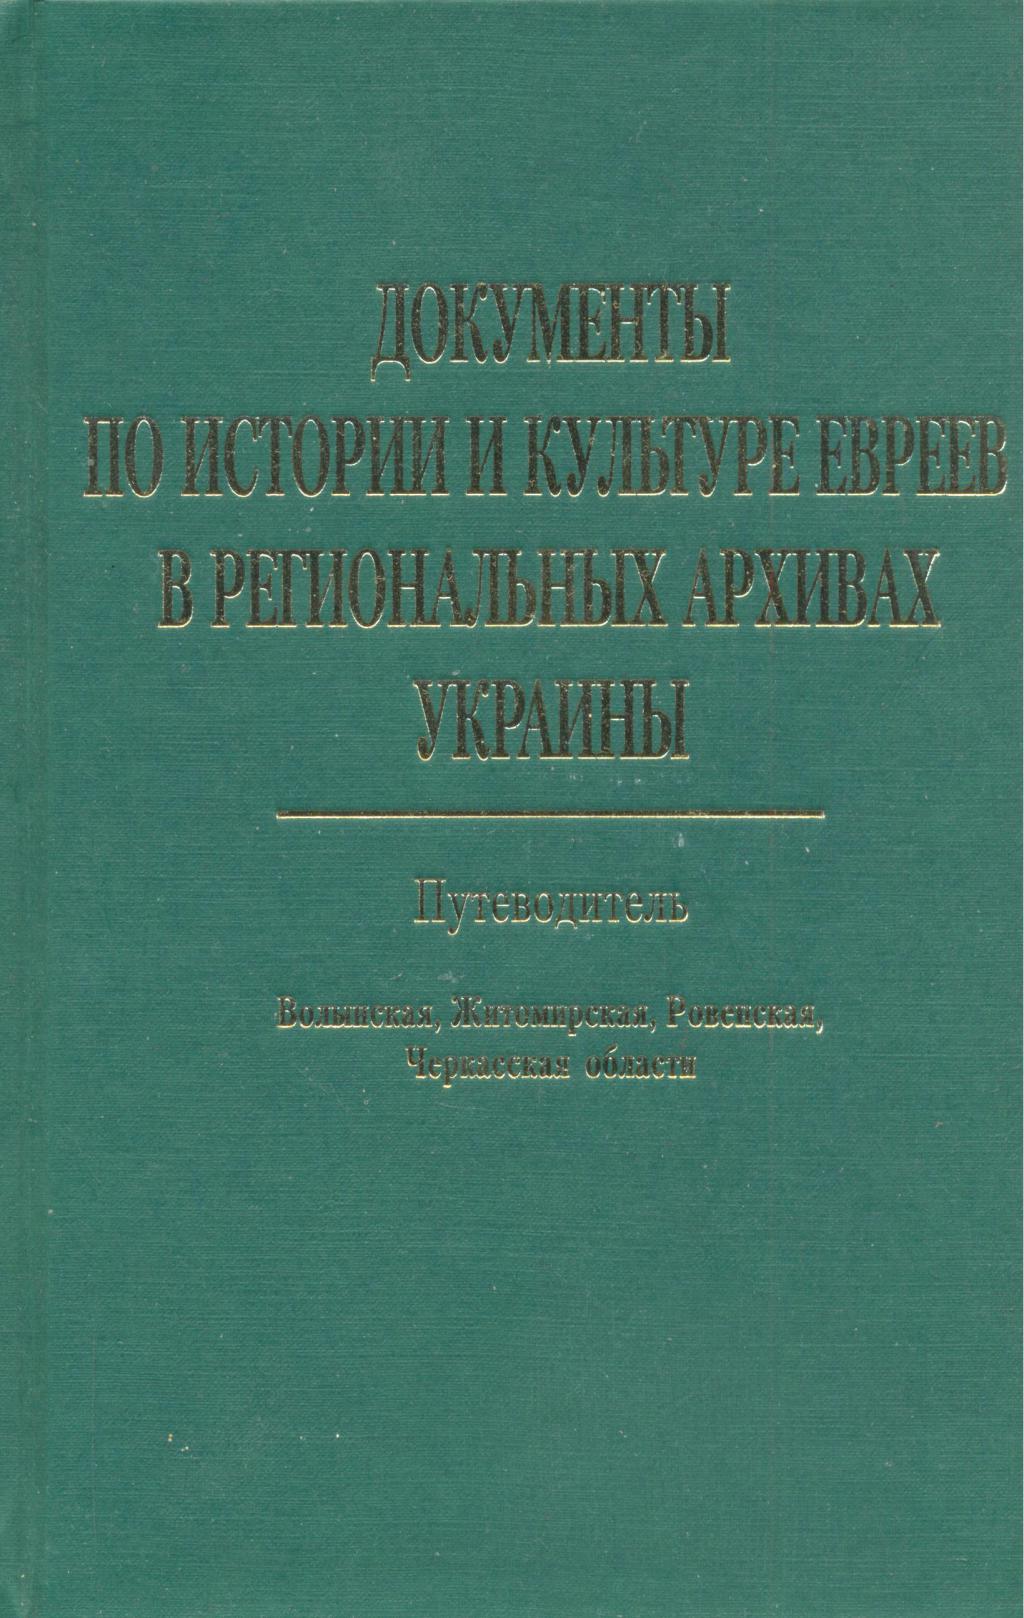 Документы по истории и культуре евреев в региональных архивах Украины